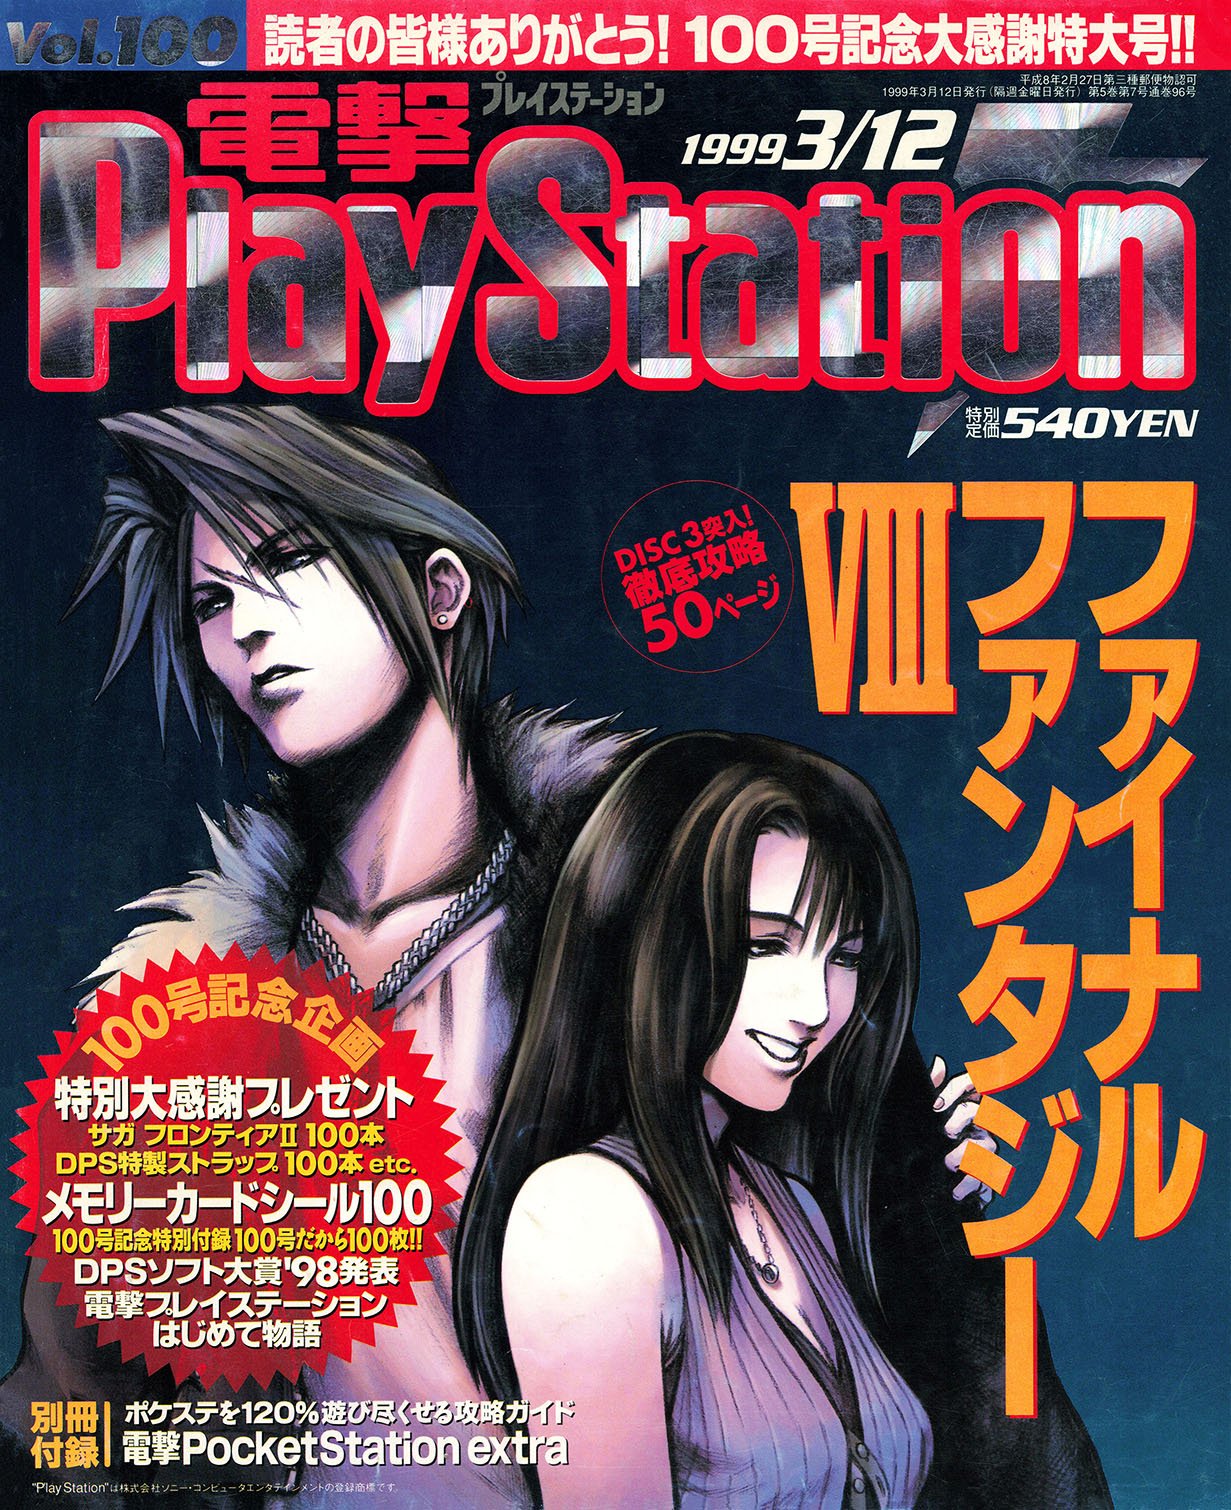 Dengeki PlayStation Vol.100 (March 12, 1999)